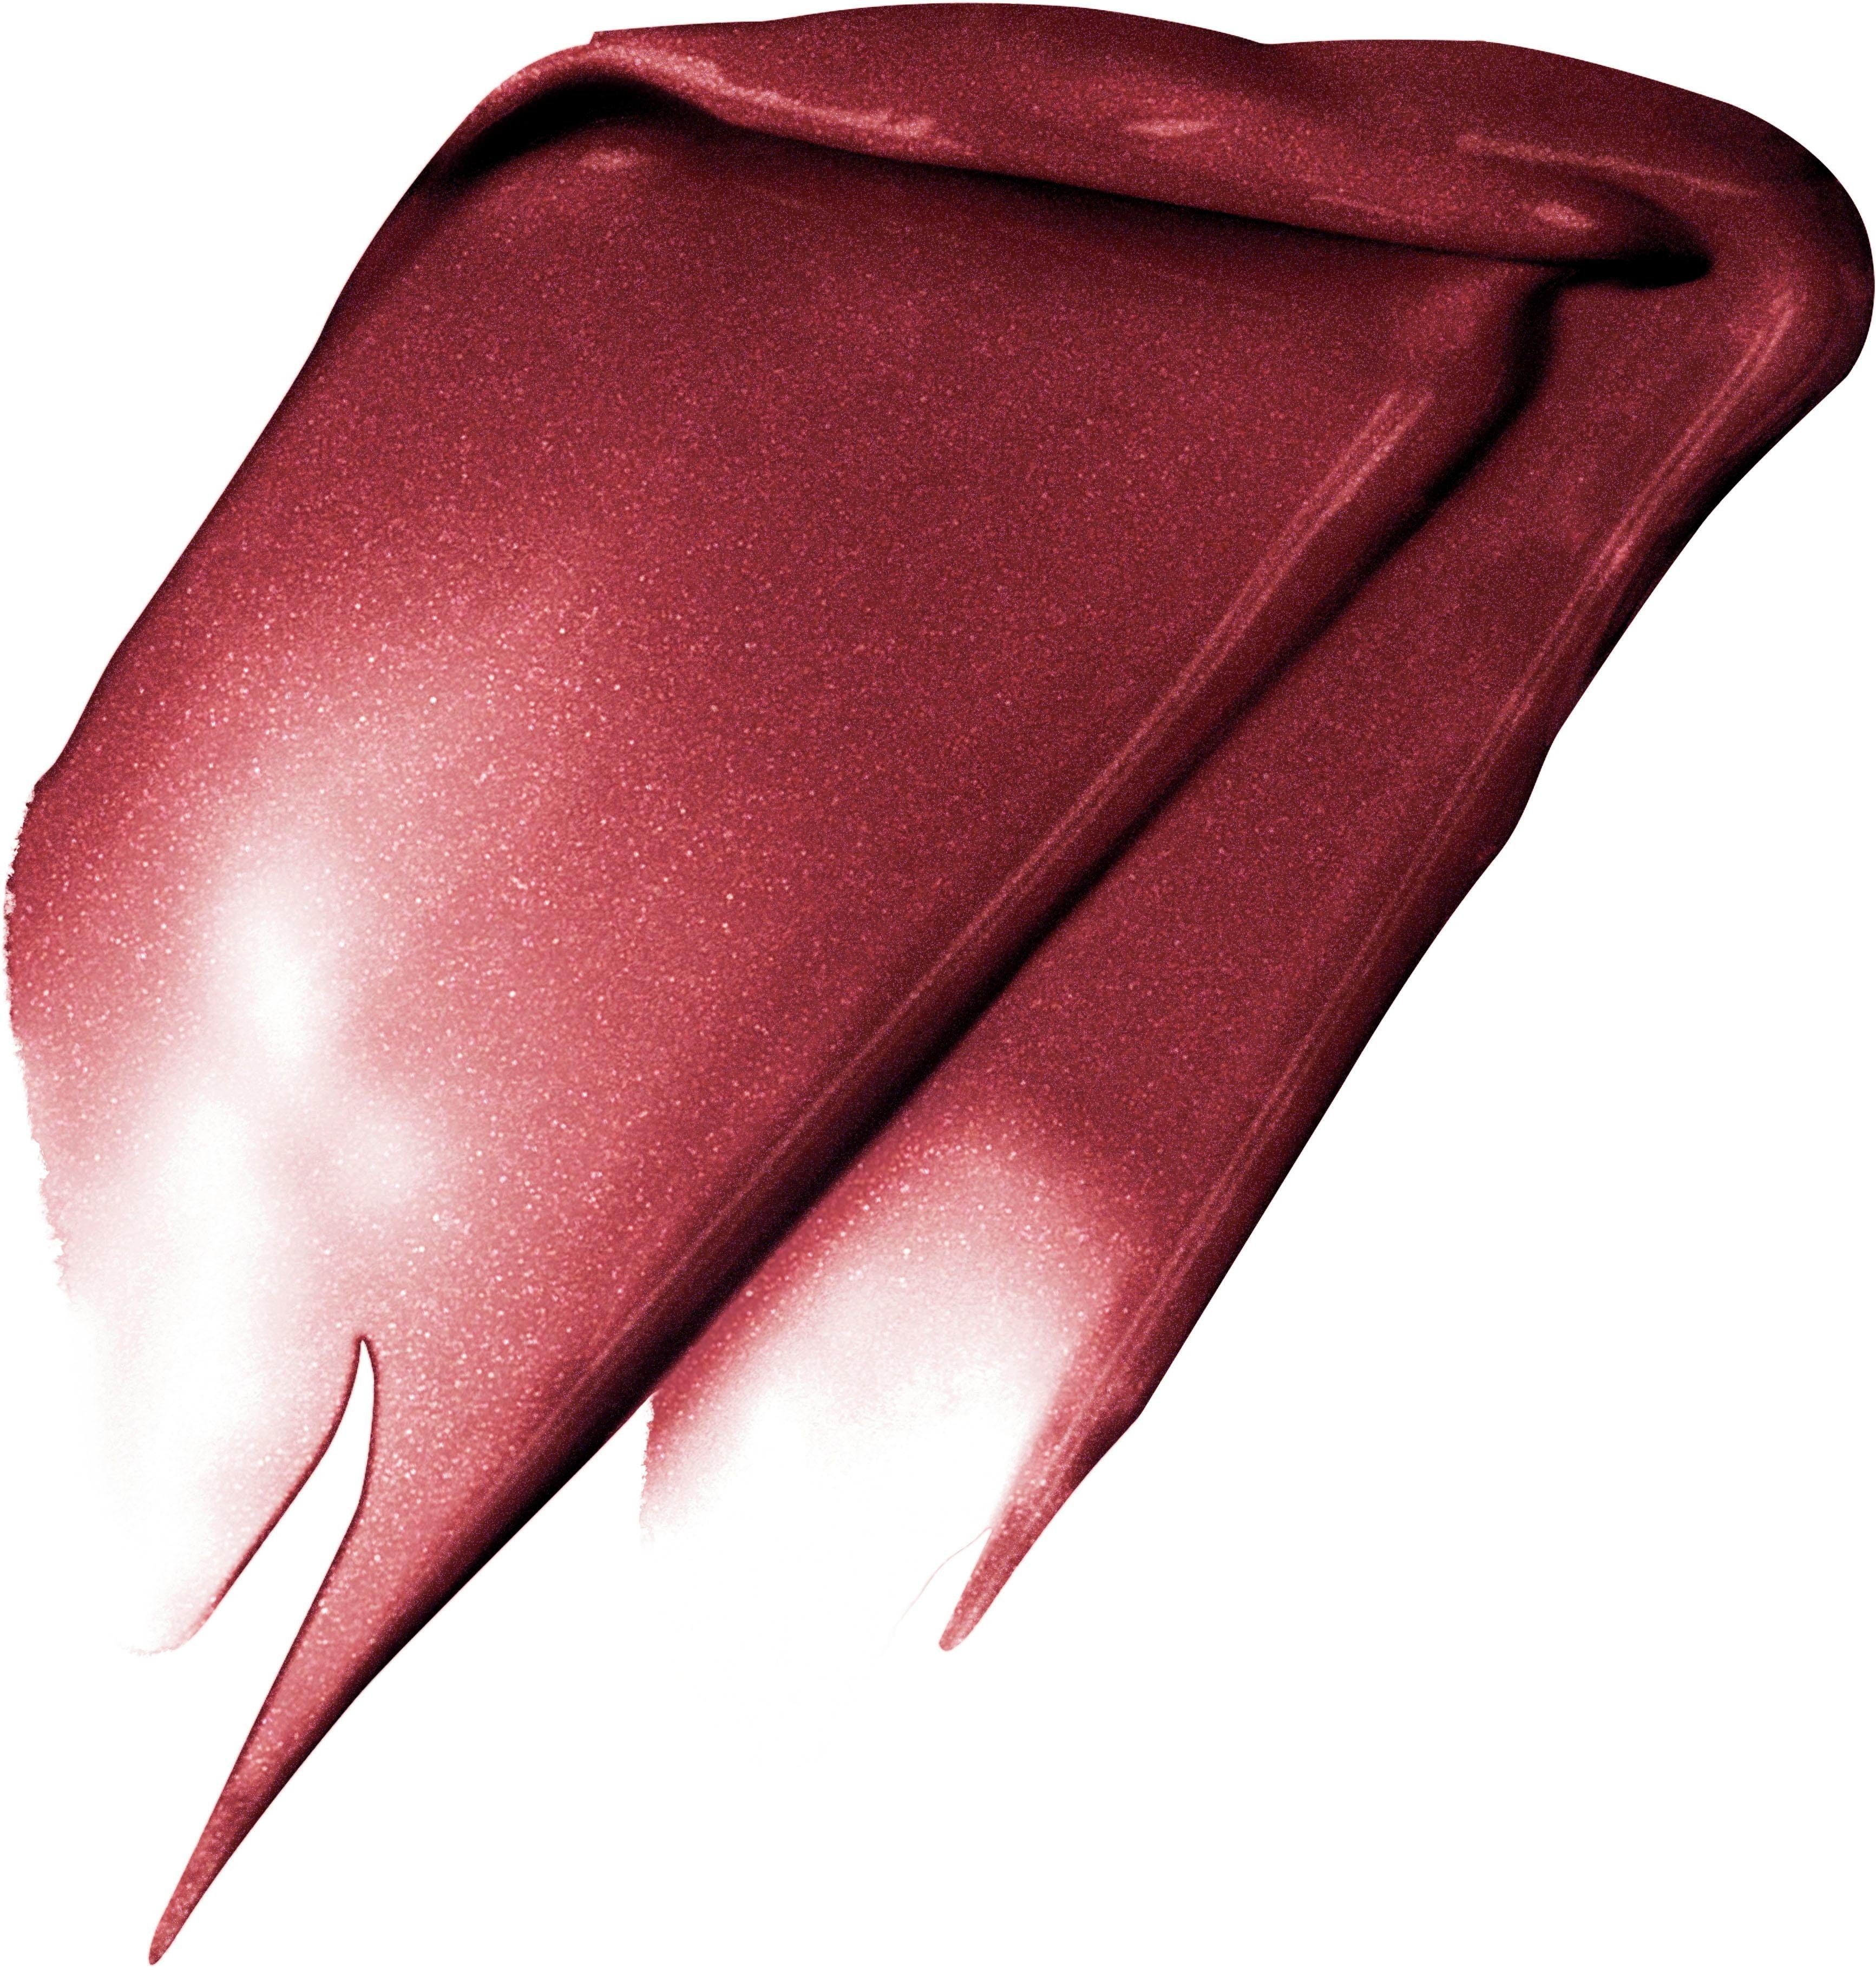 L'ORÉAL PROFESSIONNEL PARIS L'ORÉAL PARIS Fascinate I Metallic 205 Lippenstift Rouge Signature